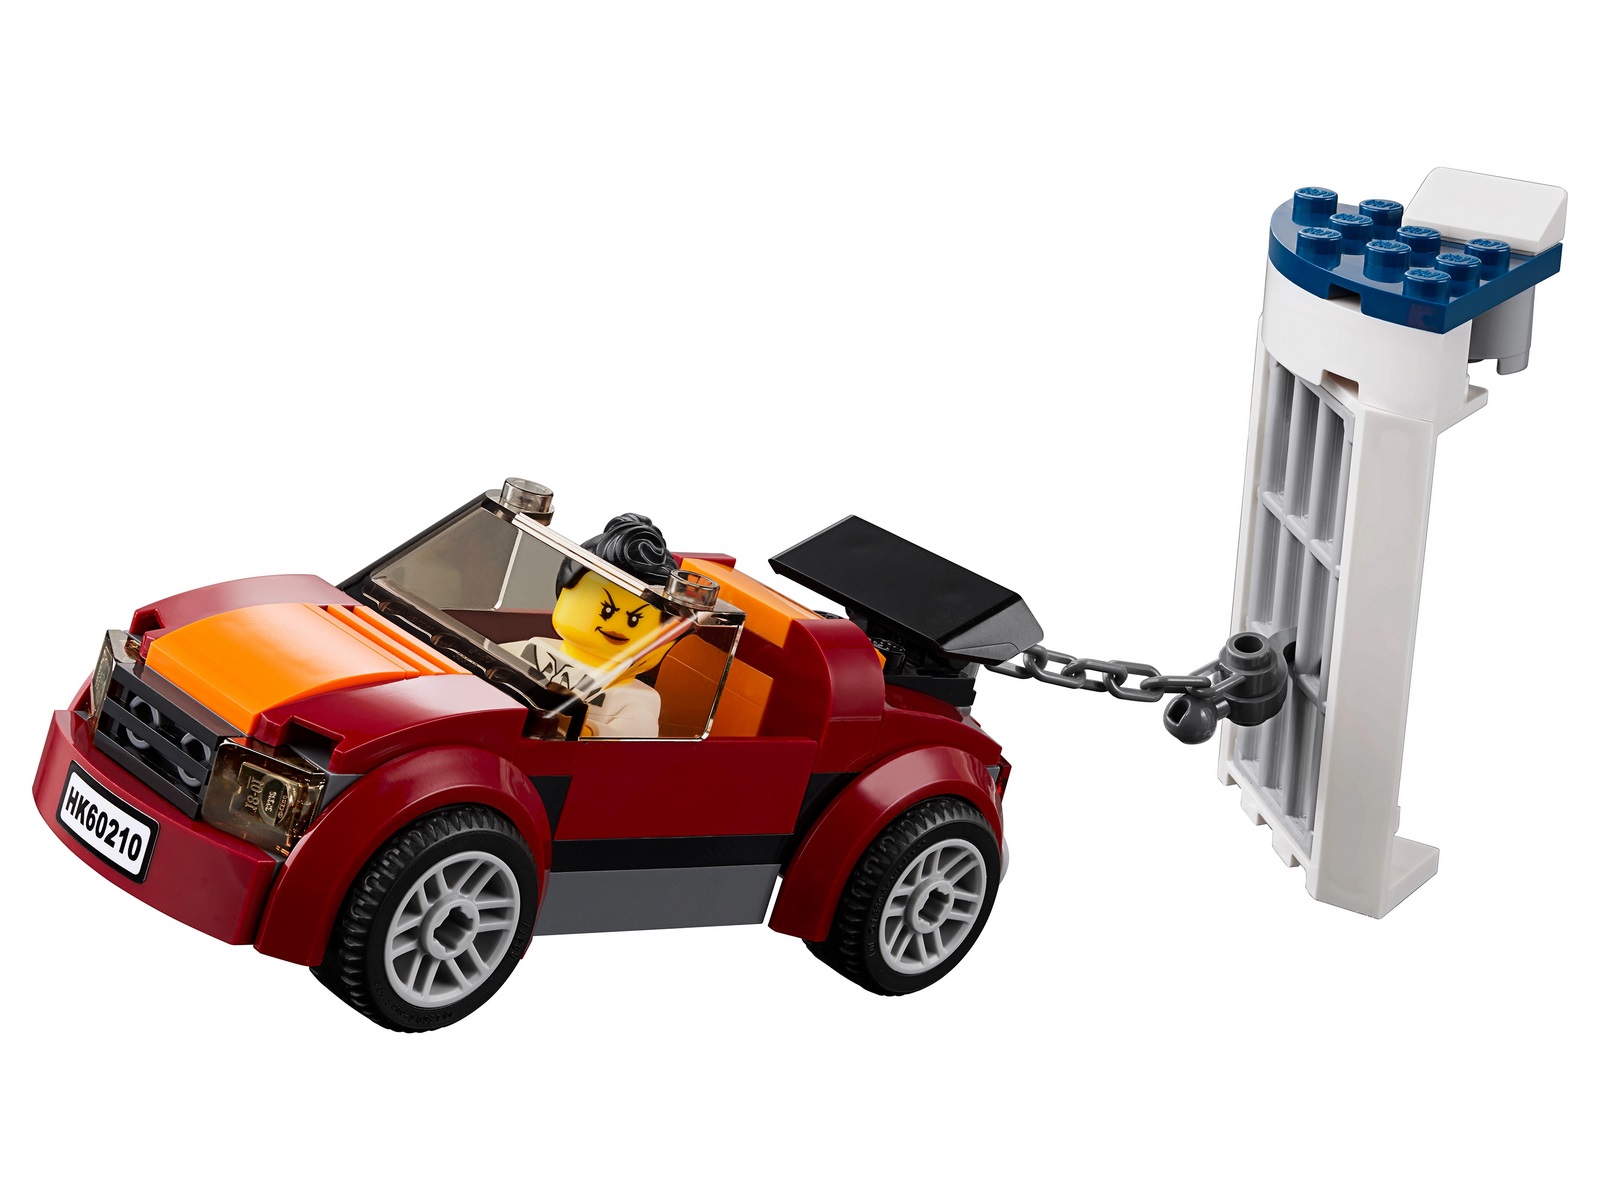 Конструктор LEGO City Police 60210 «Воздушная полиция: авиабаза» / 529 деталей